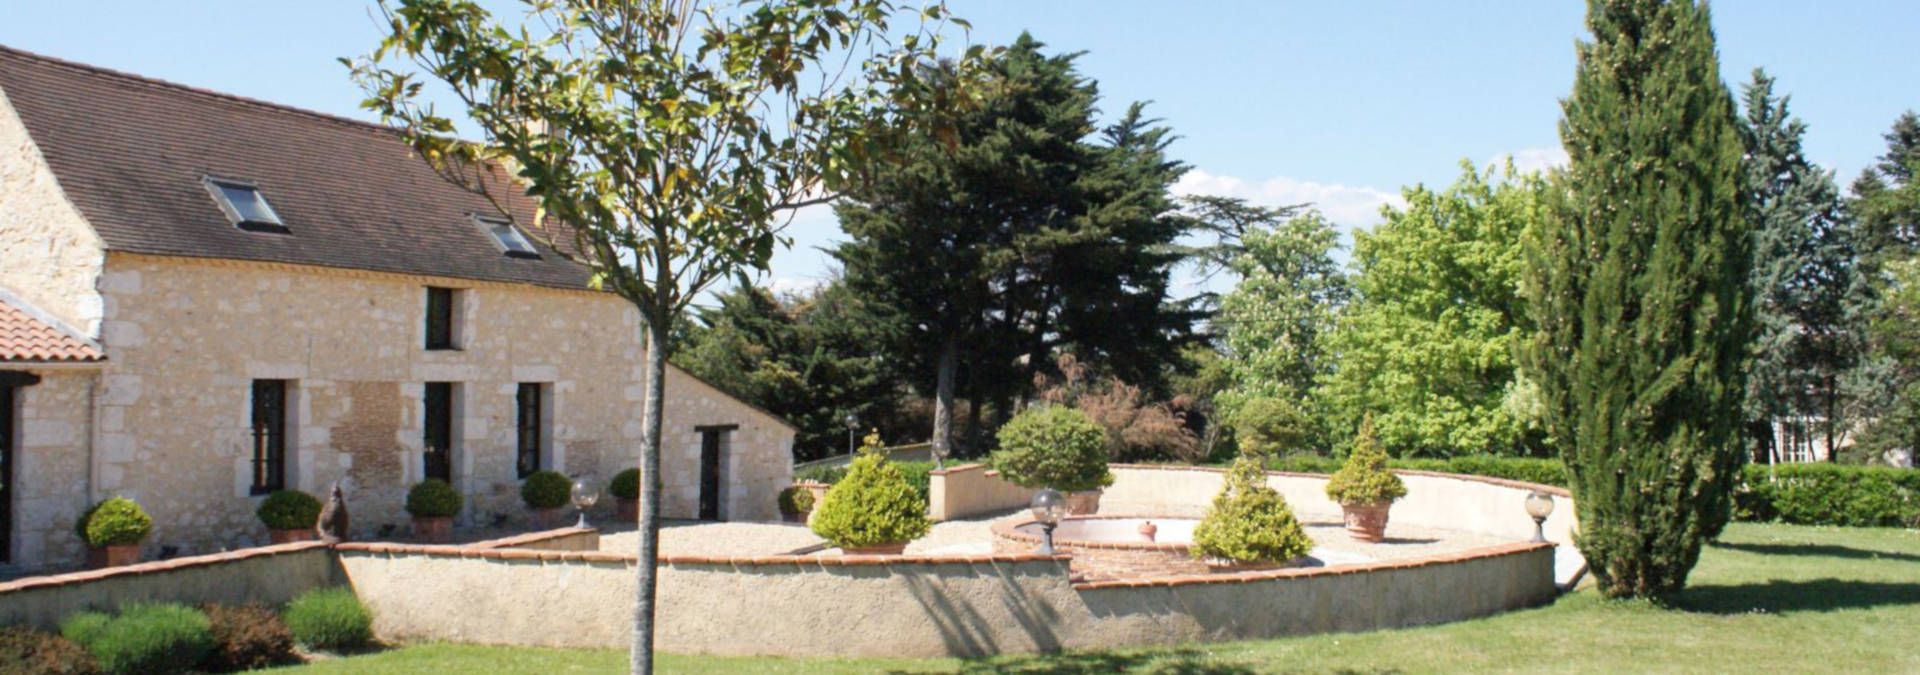 Château Tirecul La Gravière - Rue des Vignerons